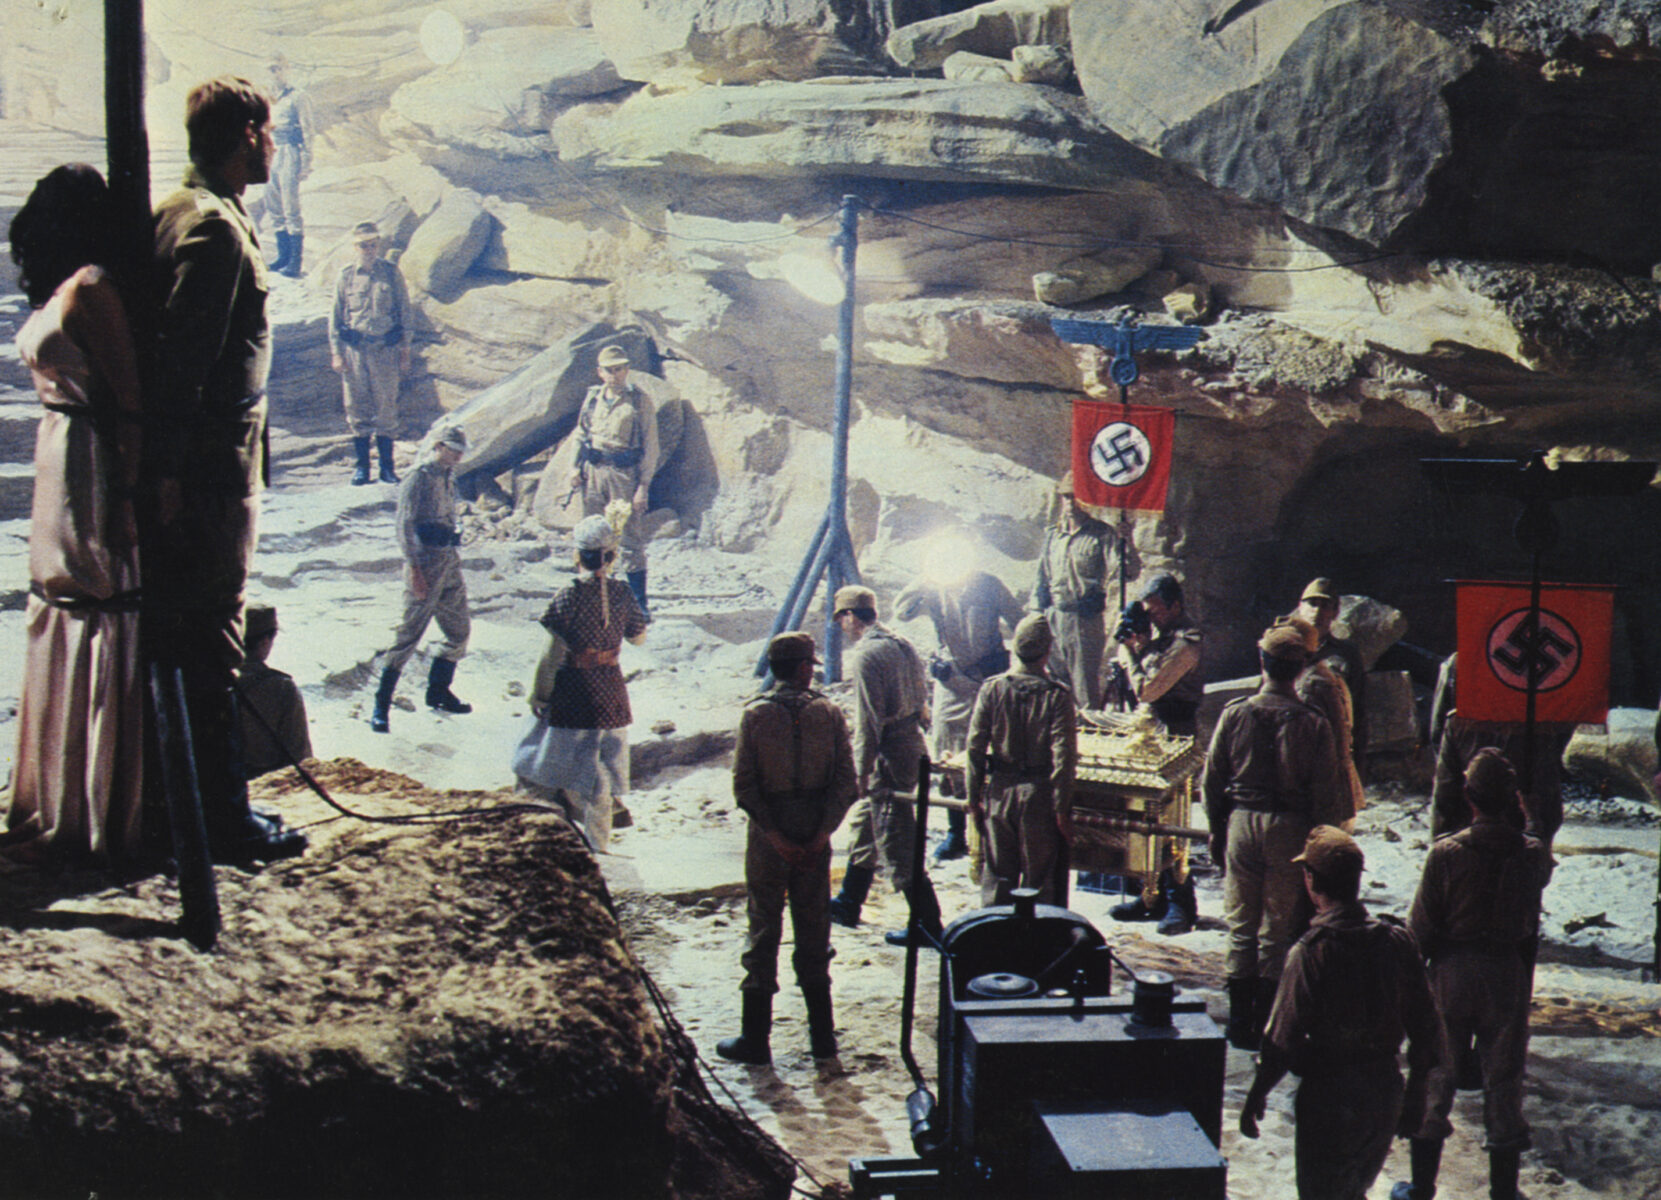 Raiders of the lost ark 5 Spielberg